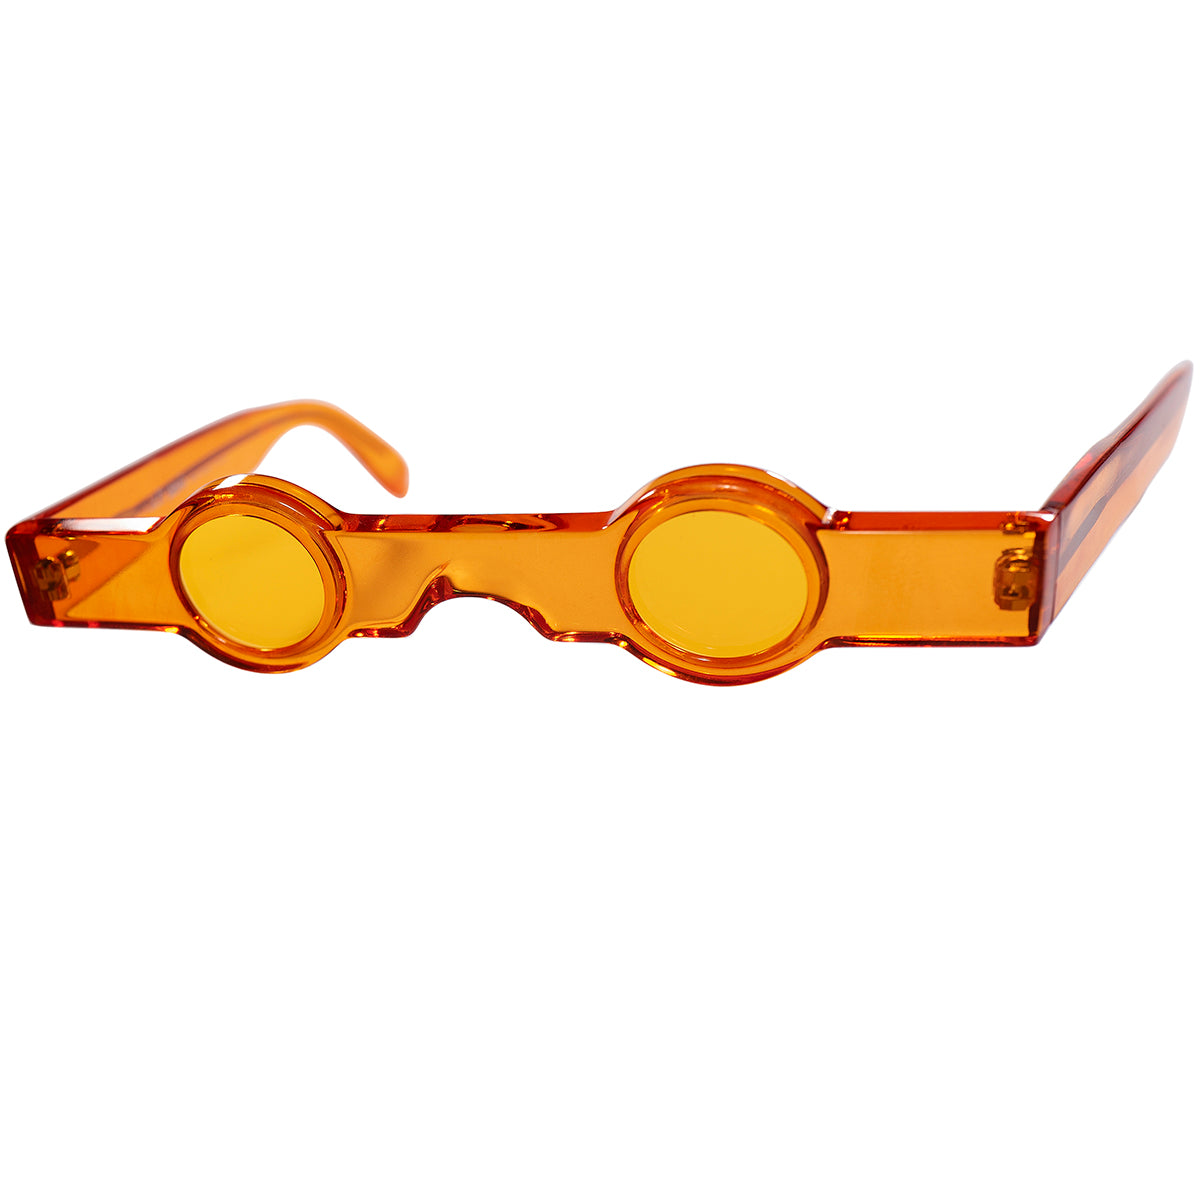 ミクリ氏の最もICONICな超大作 丸眼鏡 1980s 初期フランス製本人期デッドストック ALAIN MIKLI アランミクリ 超小径 ア –  THE CLOCKWORKER